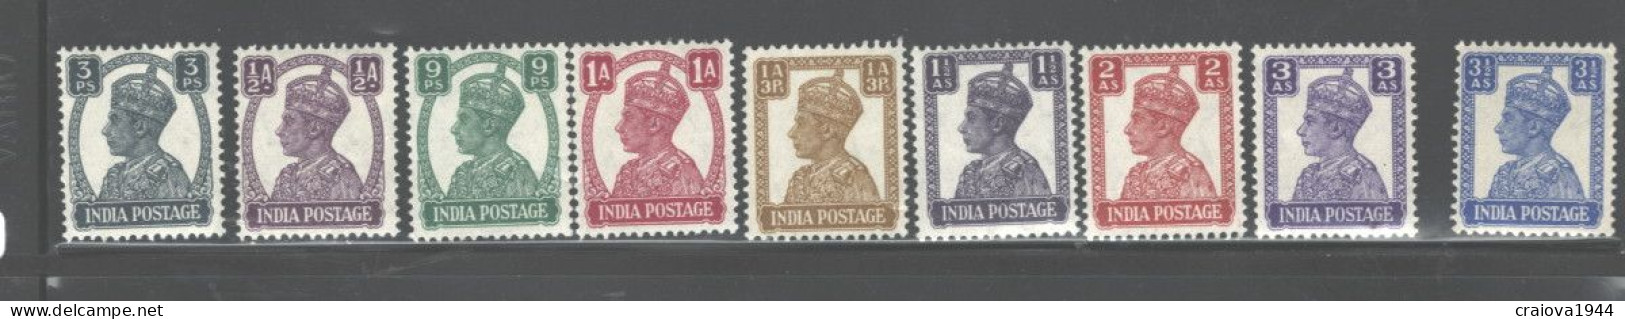 INDIA, 1941 - 1943 "GEORGE VI" MH #168 -179 - Unused Stamps